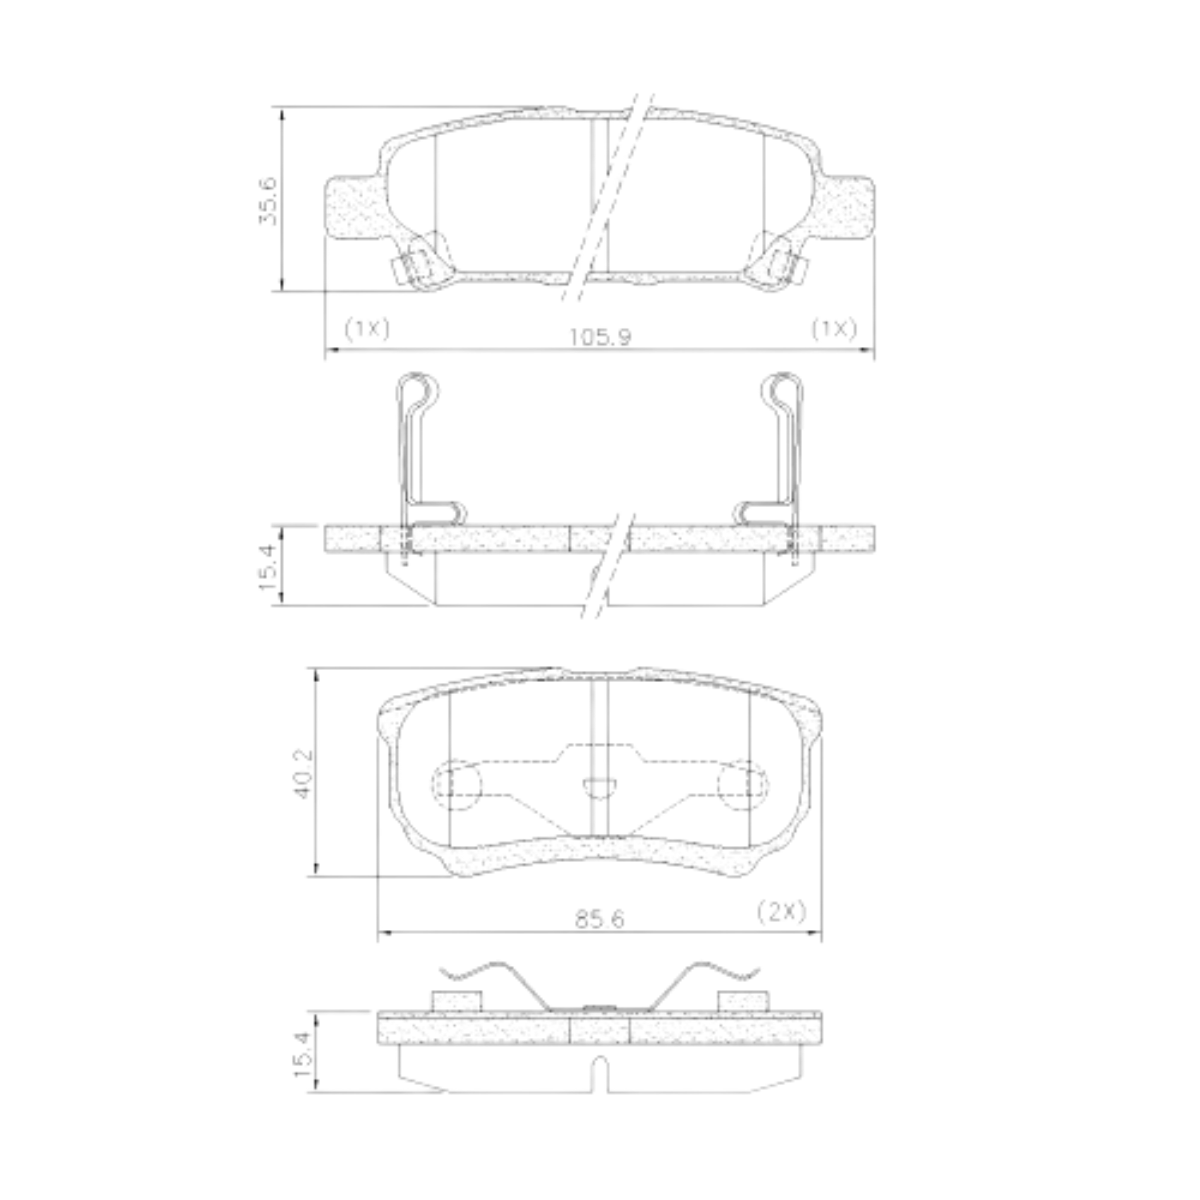 Pastilha Freio Mitsubishi Lancer 2.0 16v Gt By Armura 2016 Ate 2016 Traseira Sistema Akebono Fras-le Pd/723